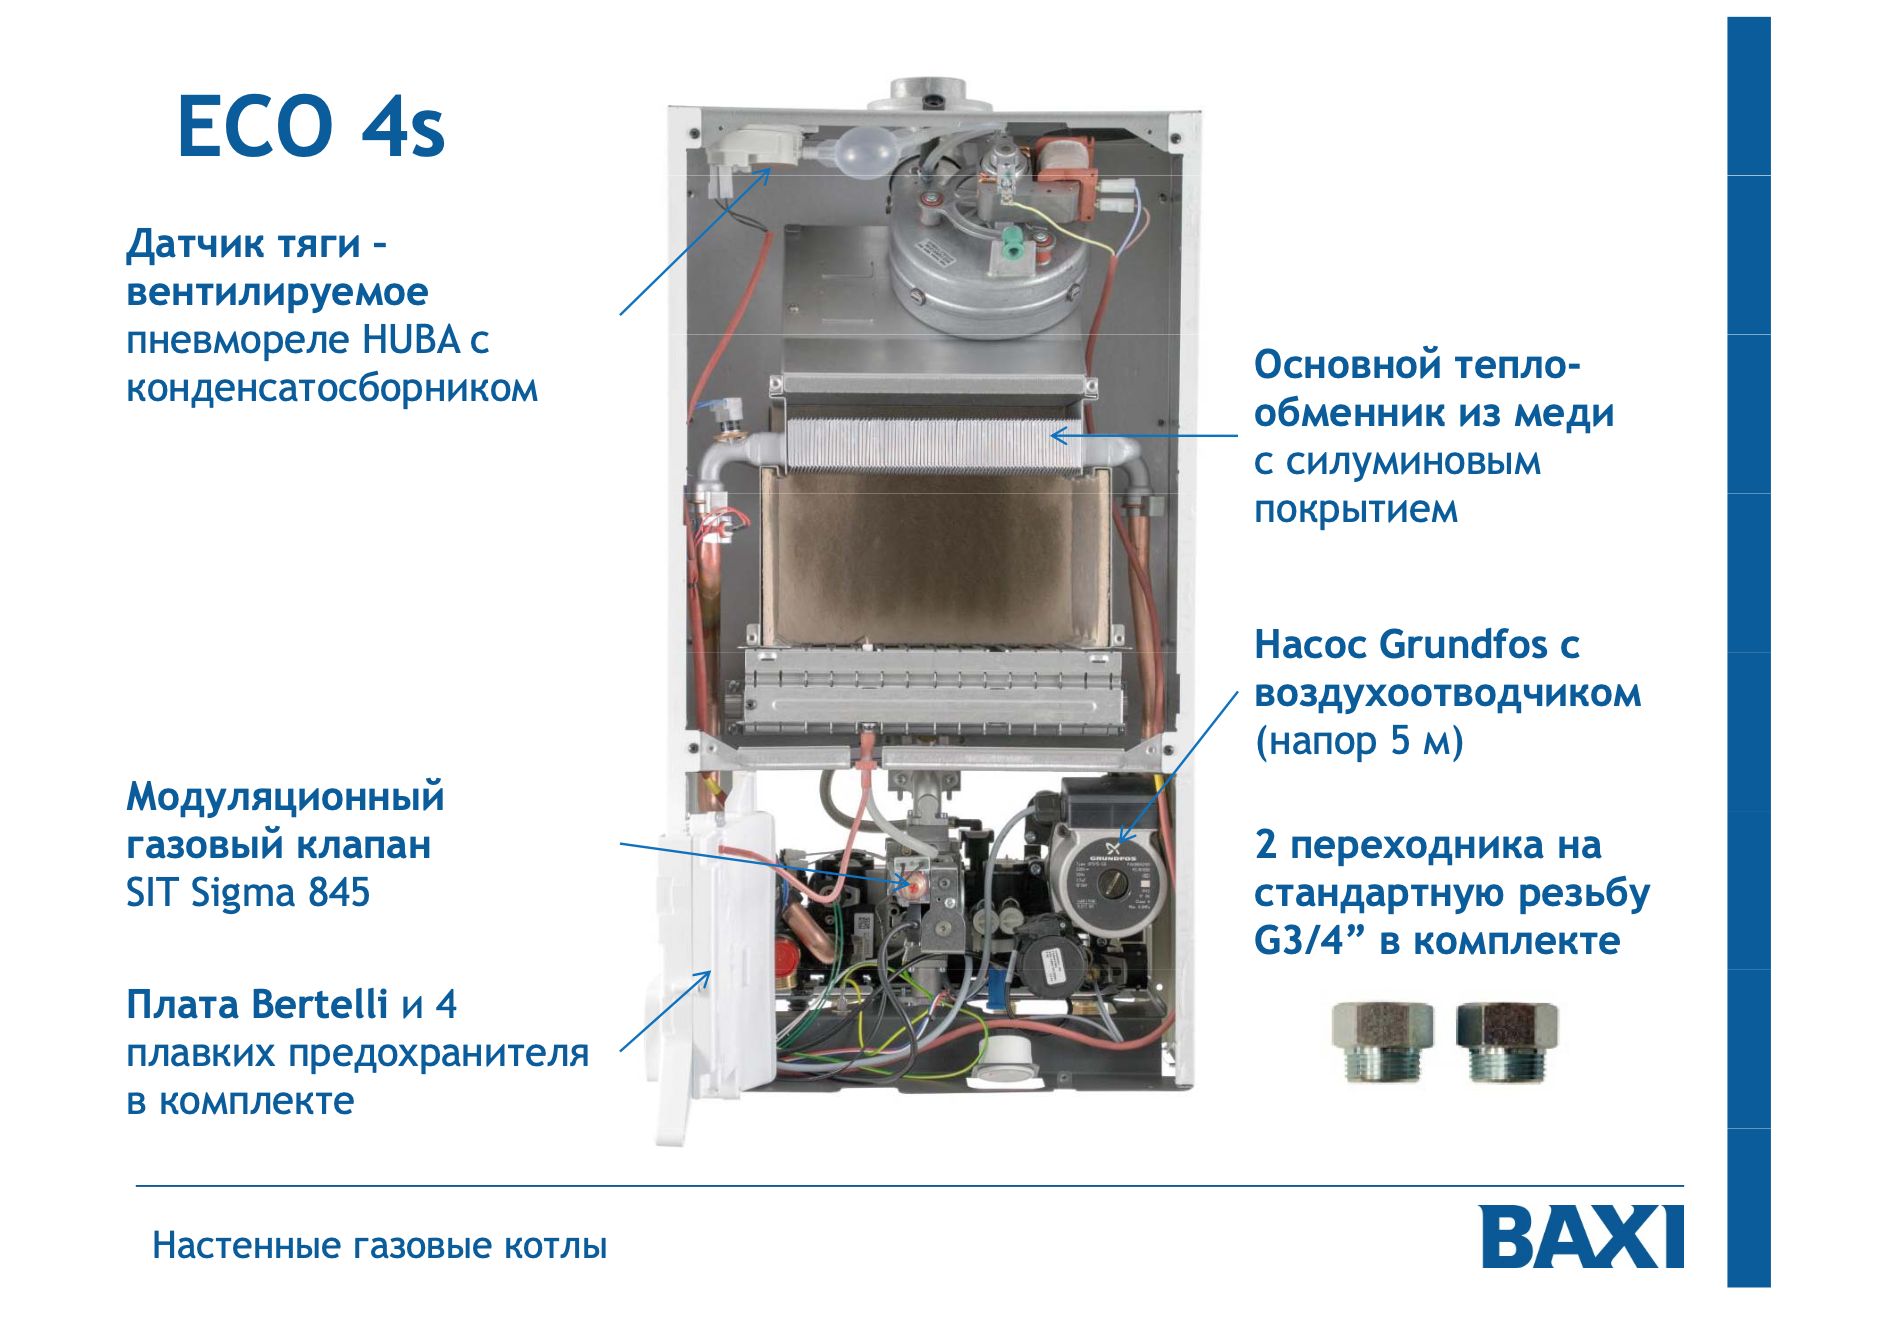 Котел бакси производитель. Газовый котел Baxi Eco-4s 1.24f. Газовый котел Baxi Eco-4s 24. Котел газовый настенный Baxi Eco-4s 24 f. Baxi Eco-4s 24 f 24 КВТ.